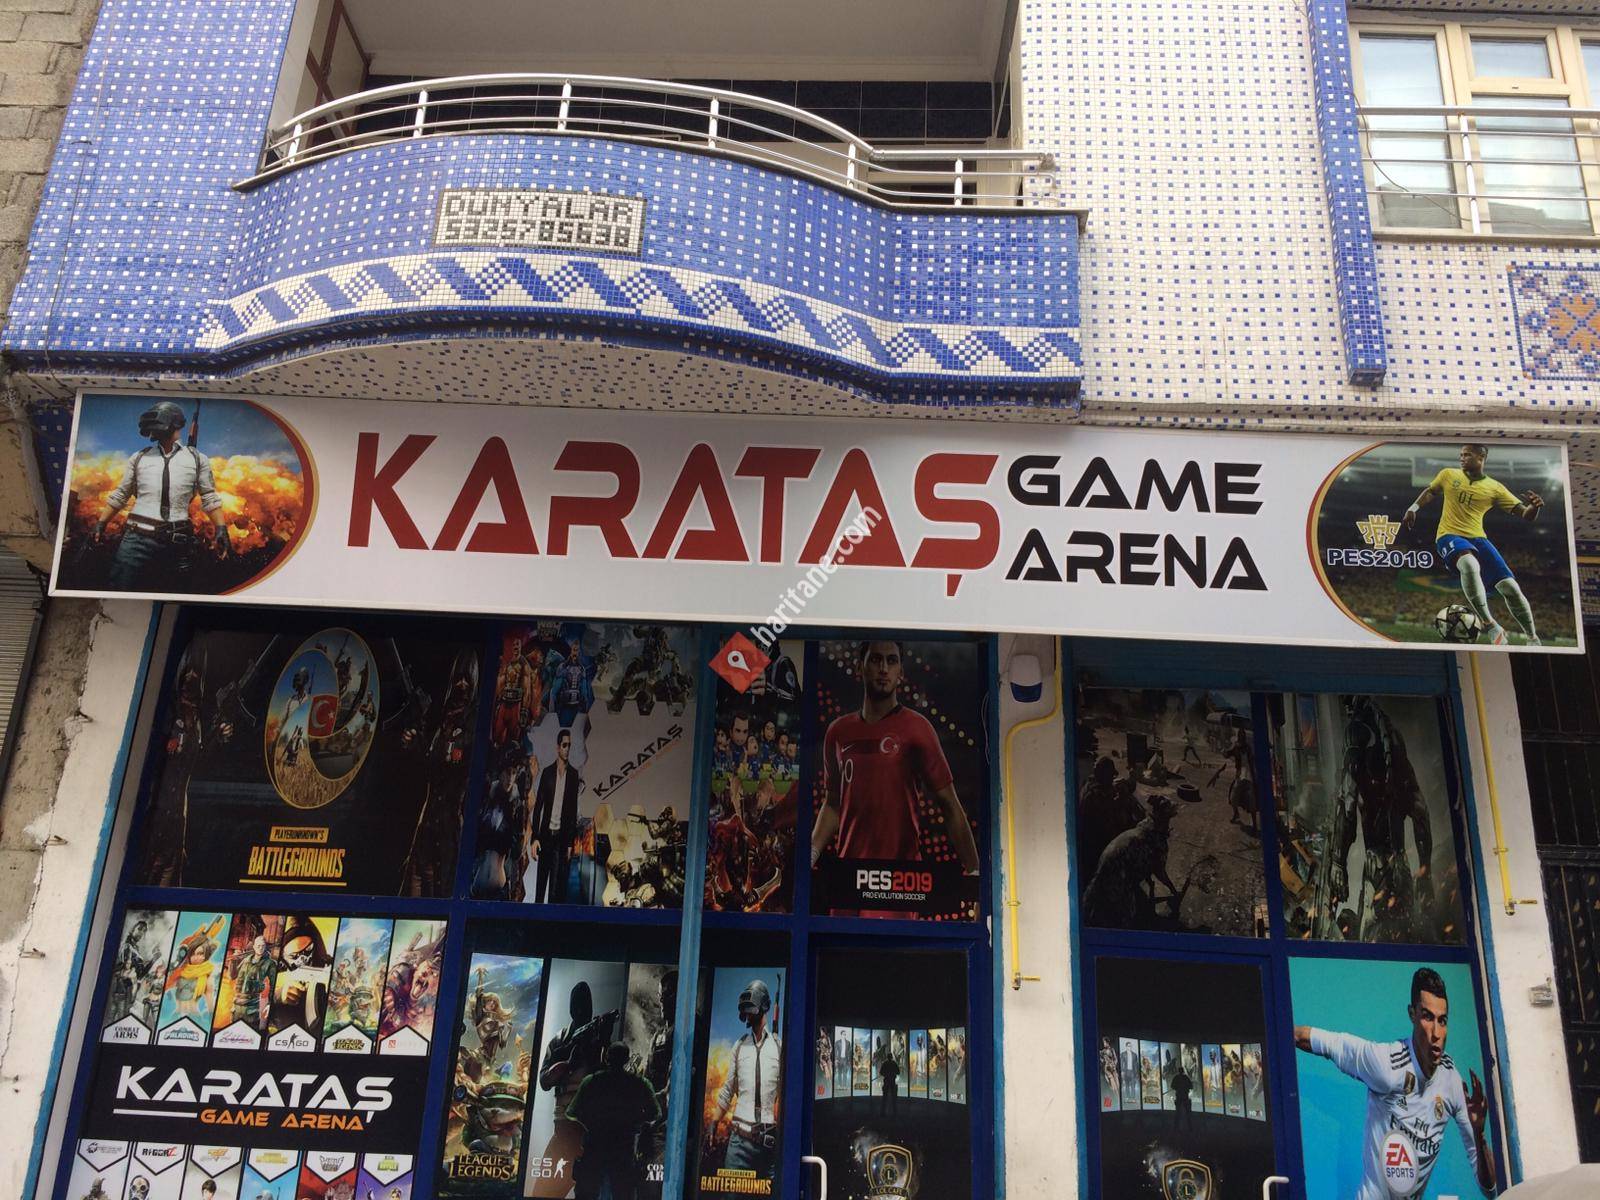 Karataş Game Arena 